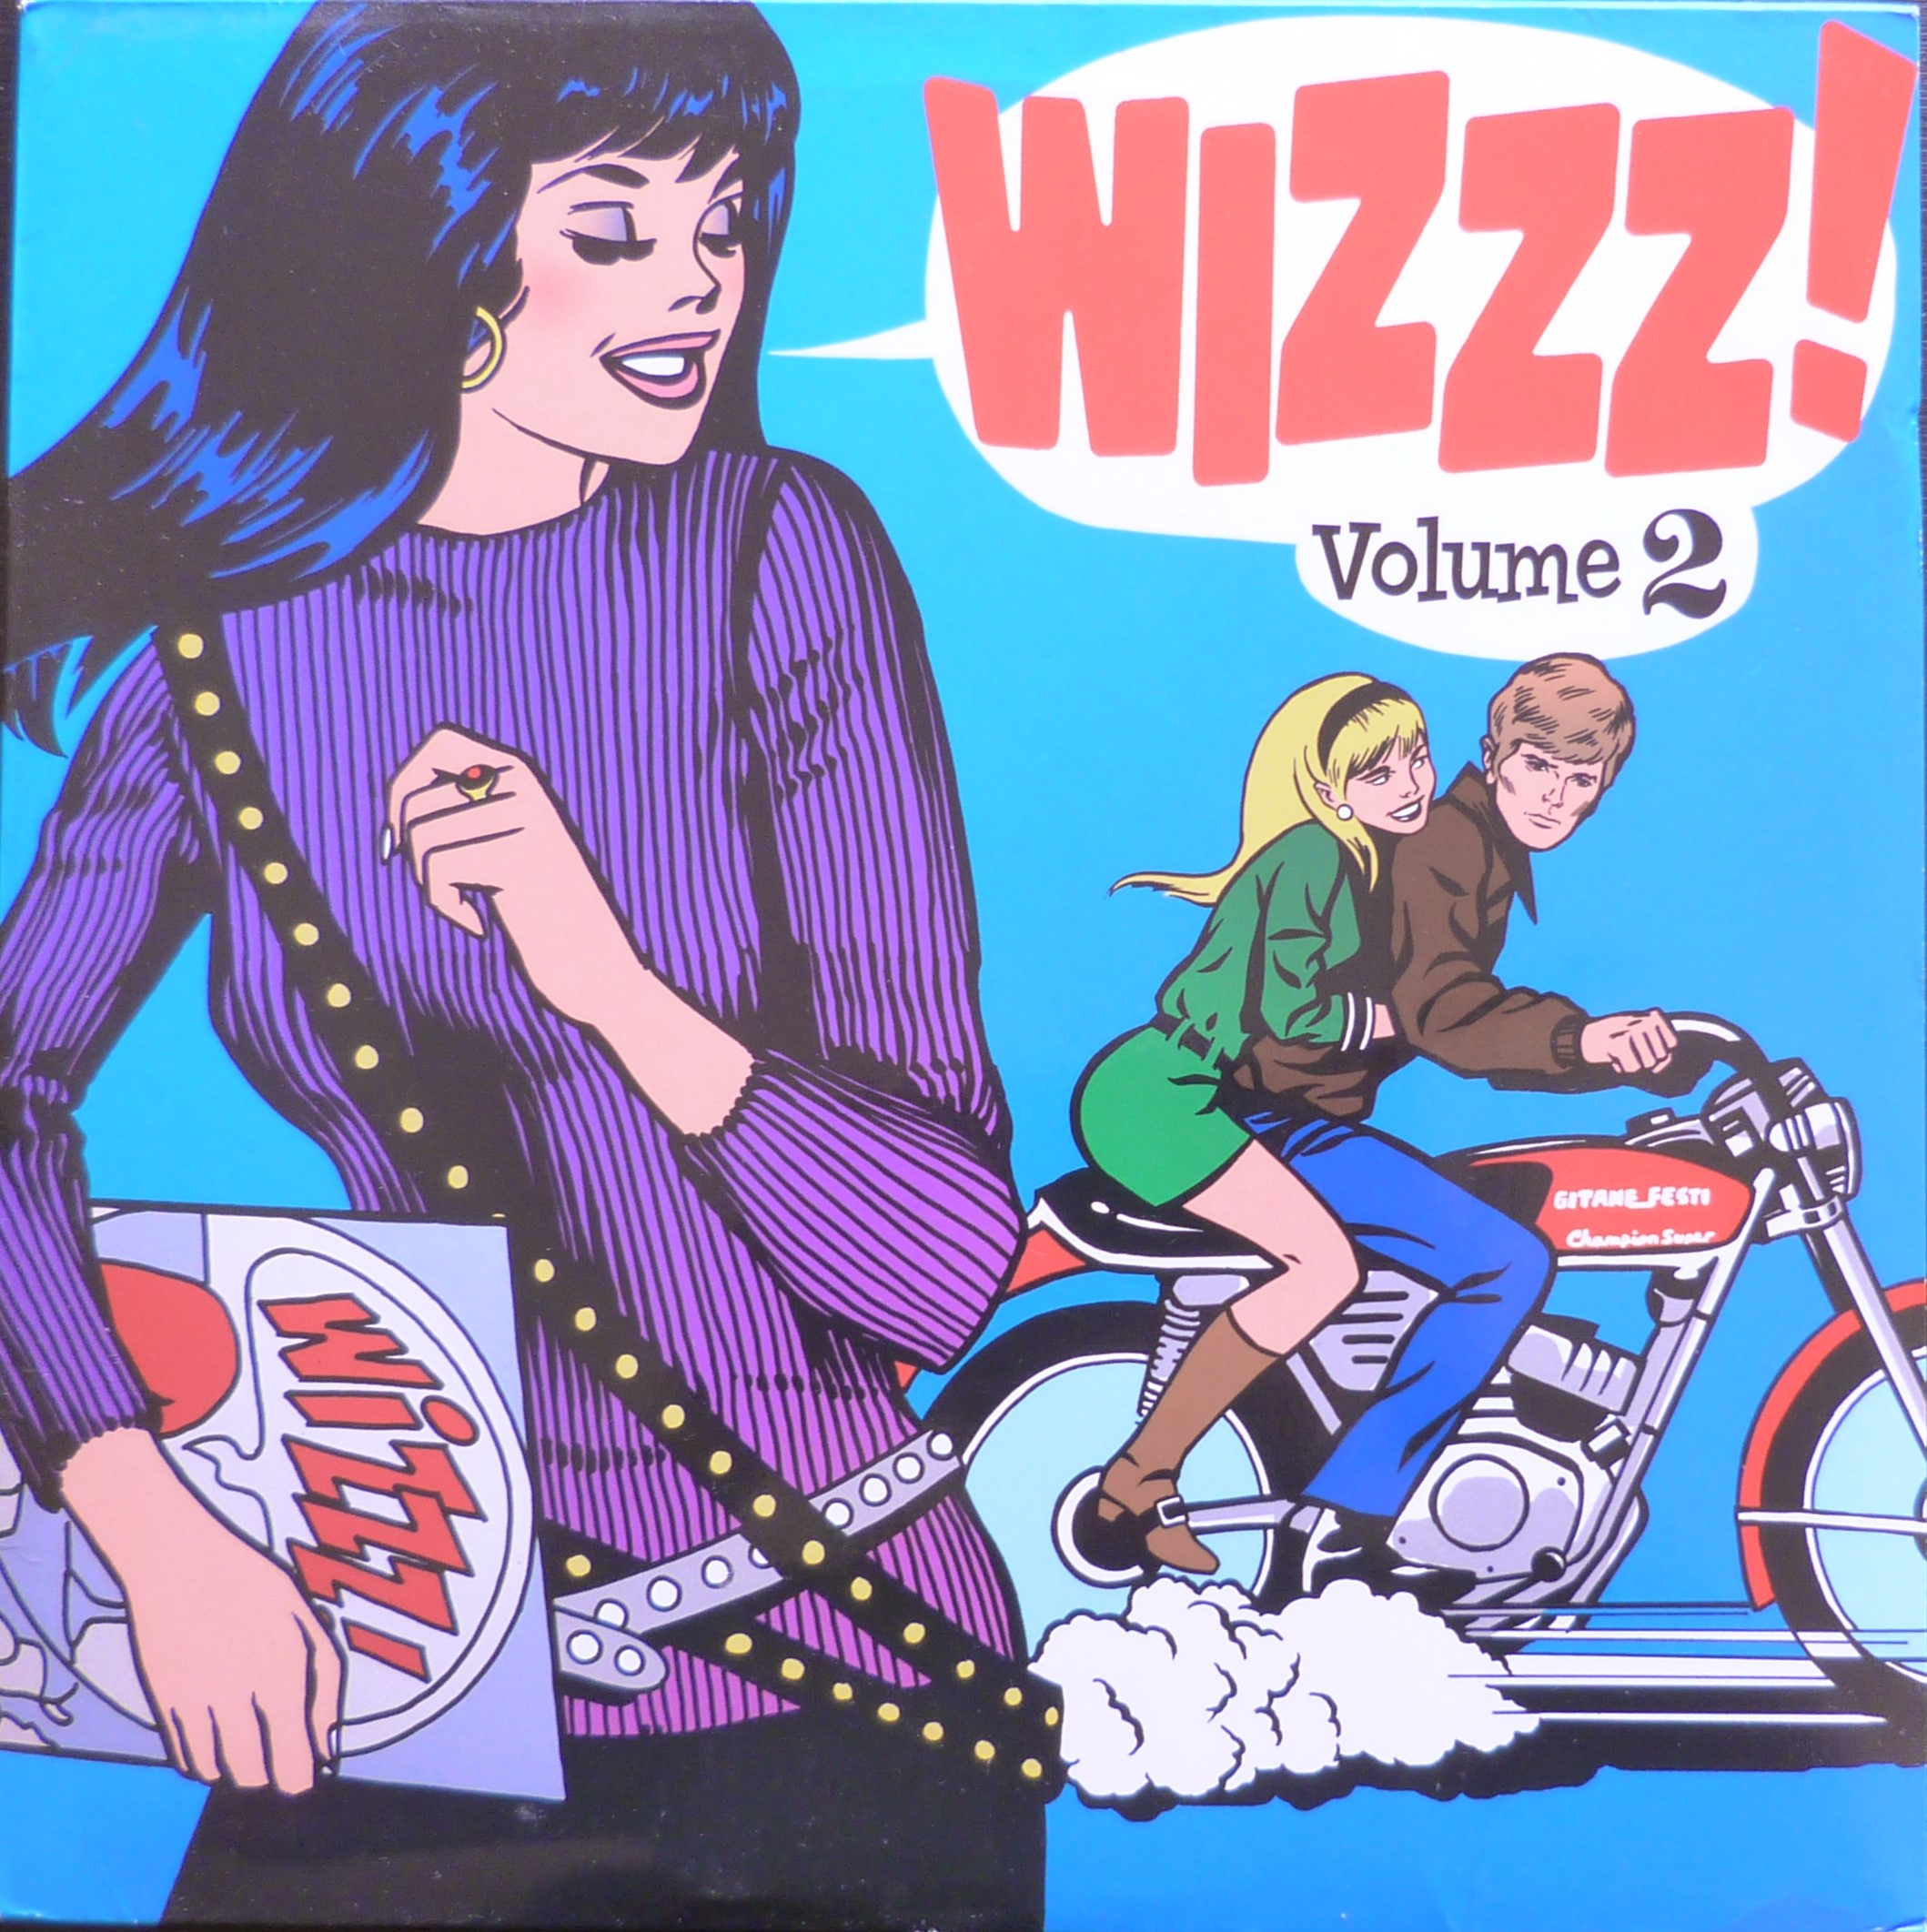 Wizzz 